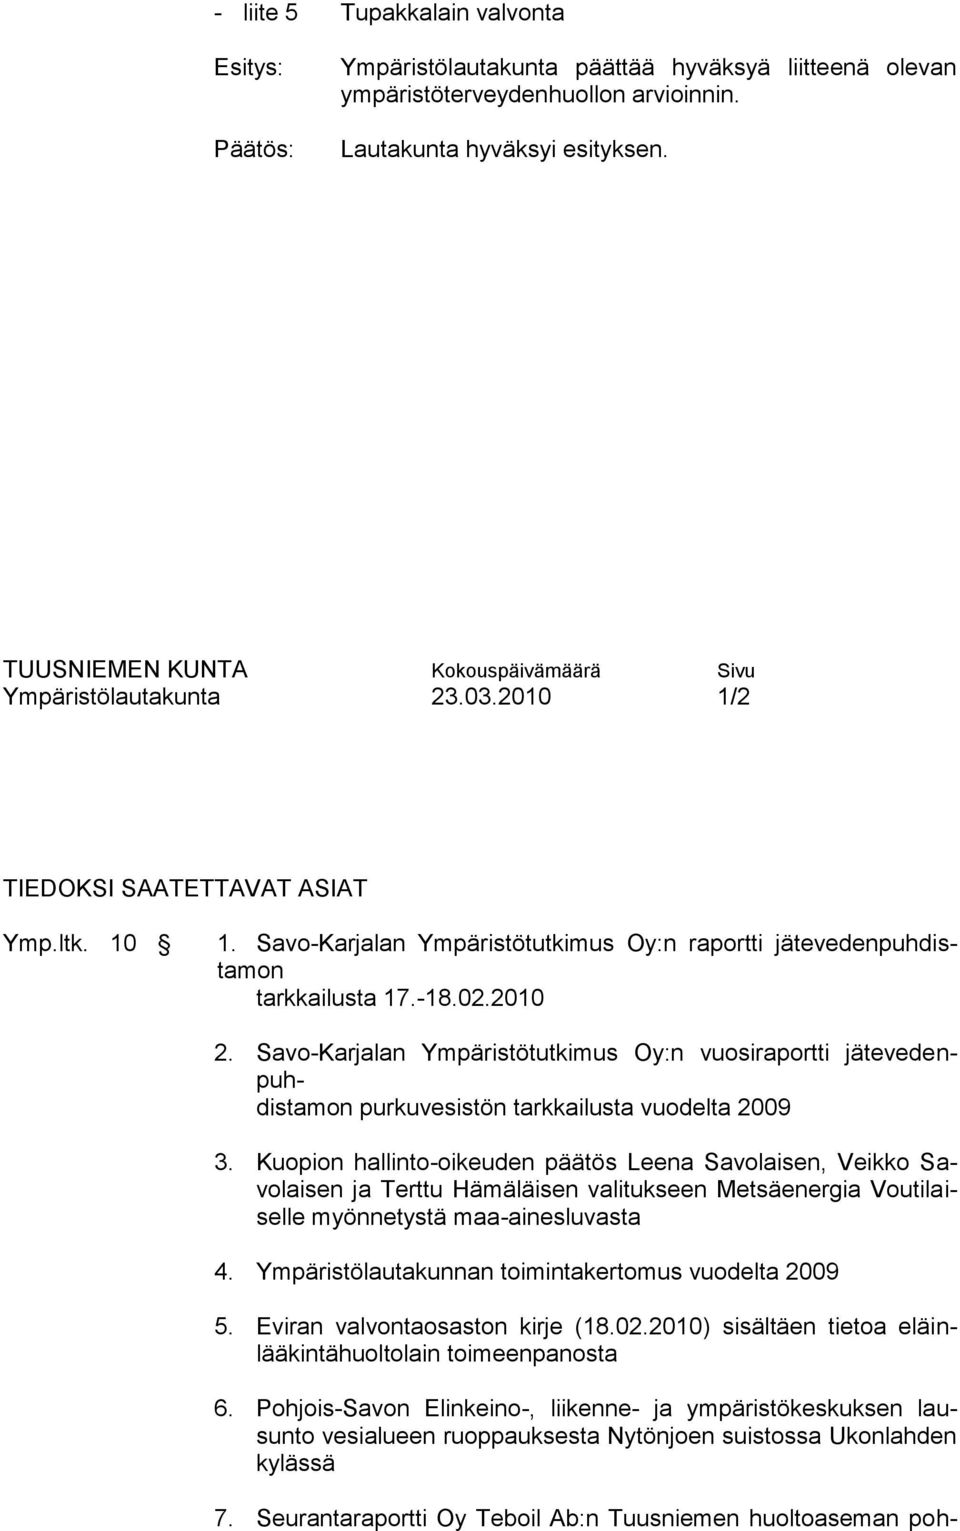 Savo-Karjalan Ympäristötutkimus Oy:n vuosiraportti jätevedenpuhdistamon purkuvesistön tarkkailusta vuodelta 2009 3.